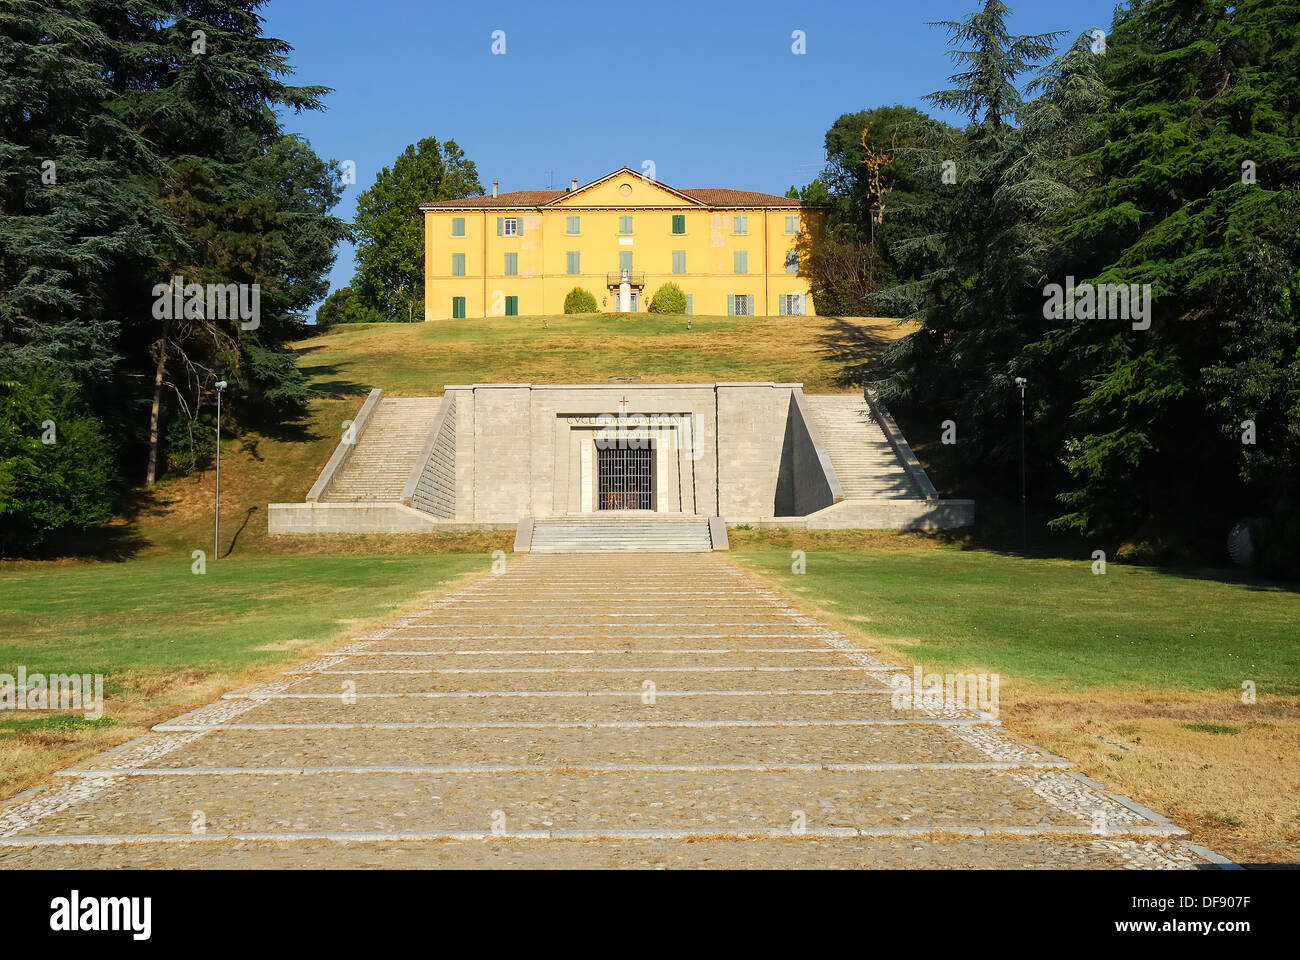 Pontecchio Marconi, Bologna, Italia. Villa Griffone, il Guglielmo Marconi's  house e il Mausoleo Foto stock - Alamy